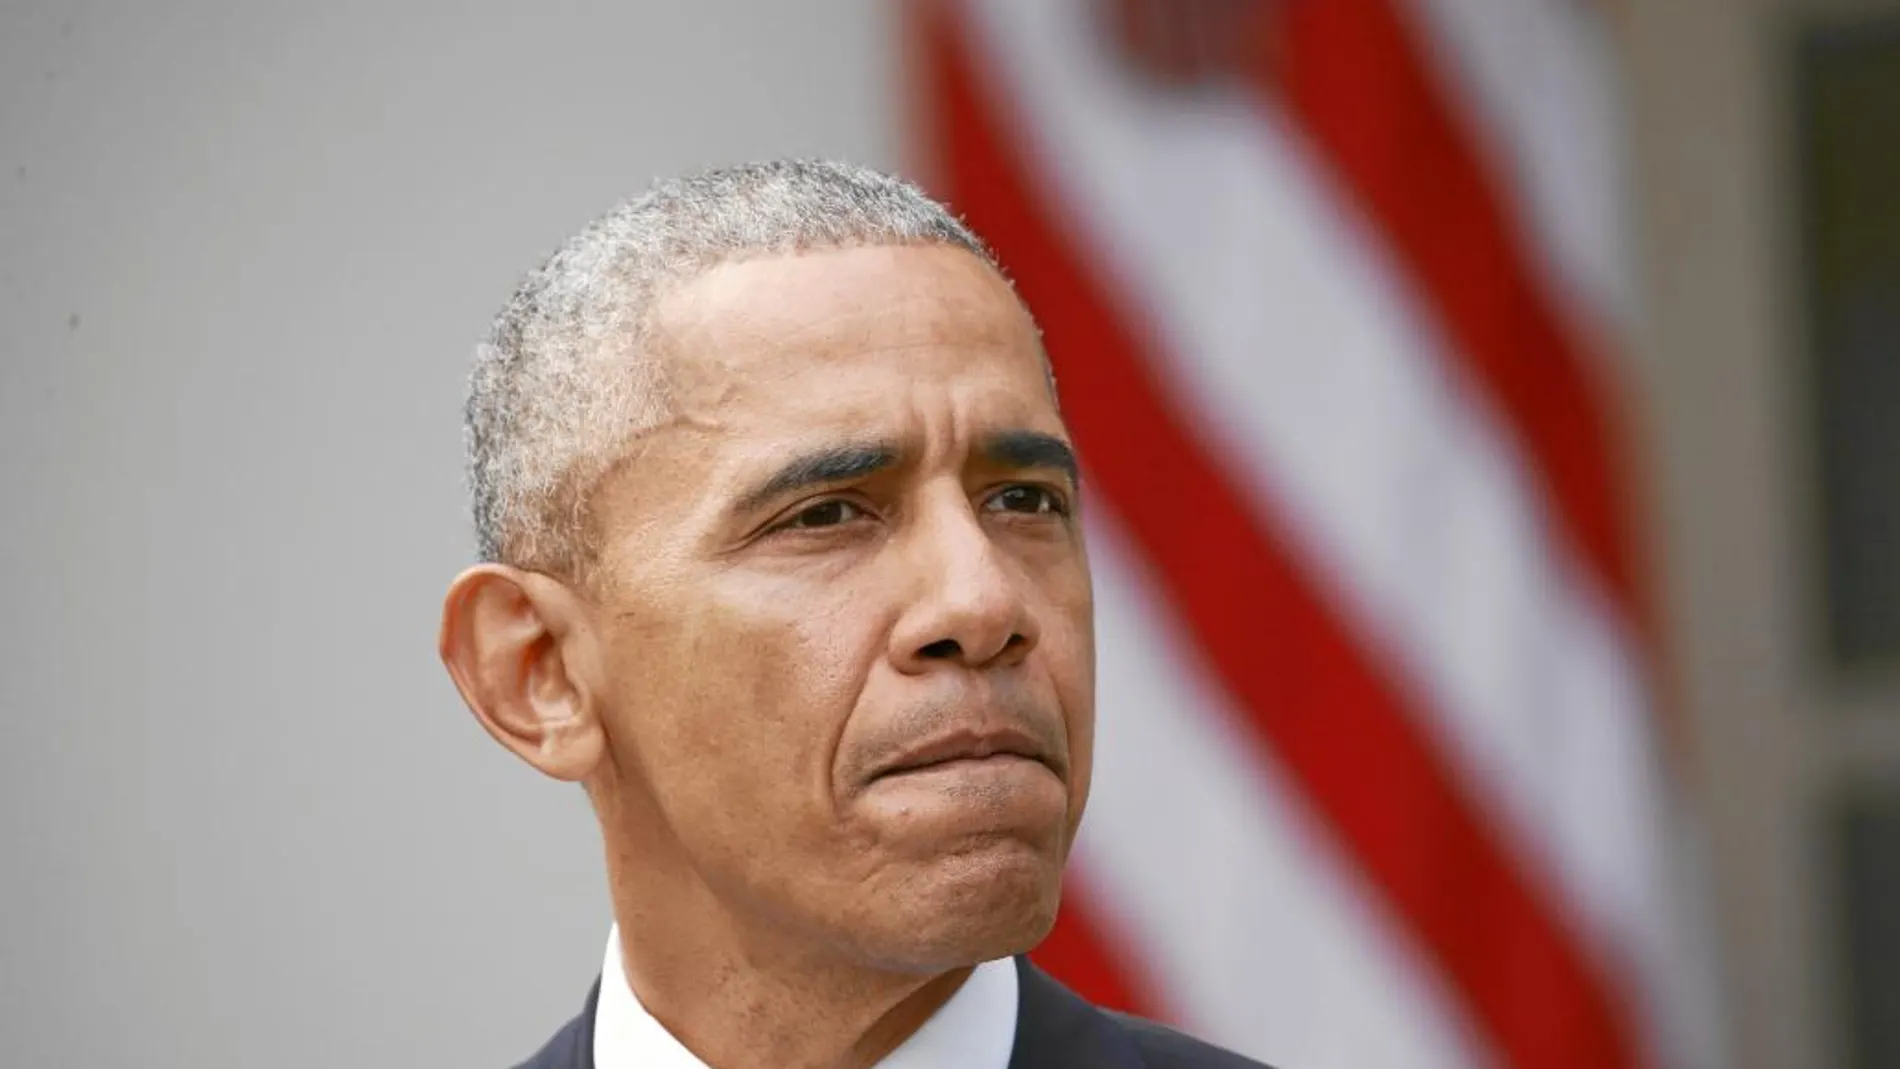 El presidente norteamericano, Barack Obama, ofreció ayer su primer discurso en la Casa Blanca tras la victoria del candidato republicano